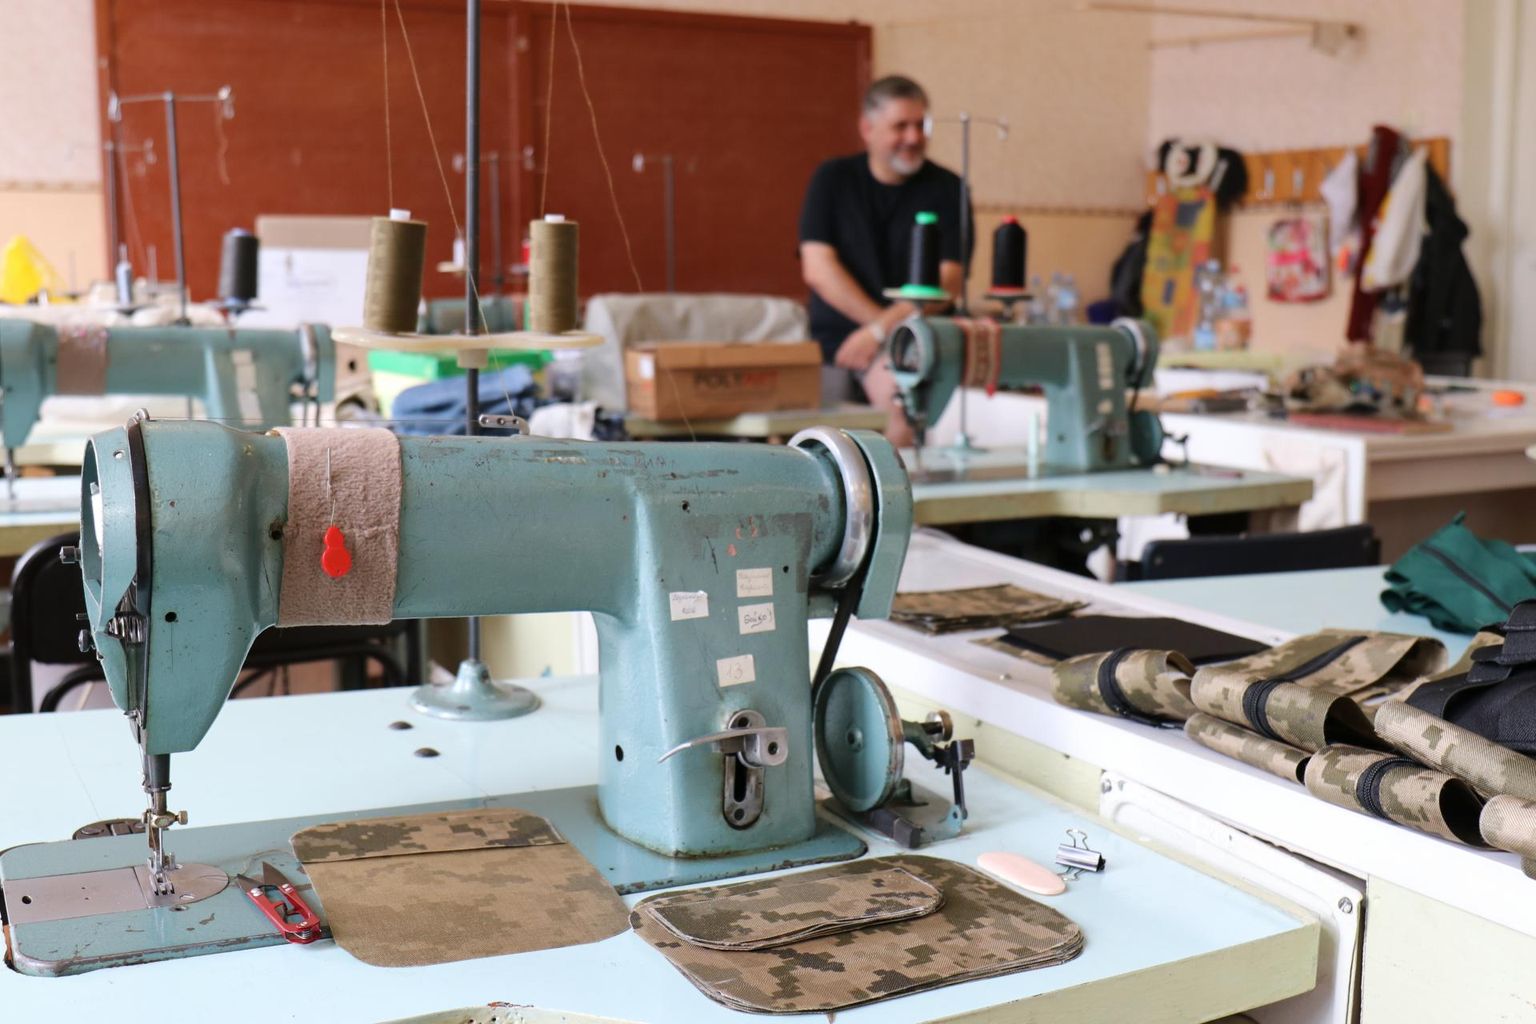 Un atelier de couture organisé par des bénévoles à Zaporizhzhia, où ils fabriquent des gilets pare-balles pour les soldats. Jusqu'à une centaine de gilets sont fabriqués dans l'atelier par jour.